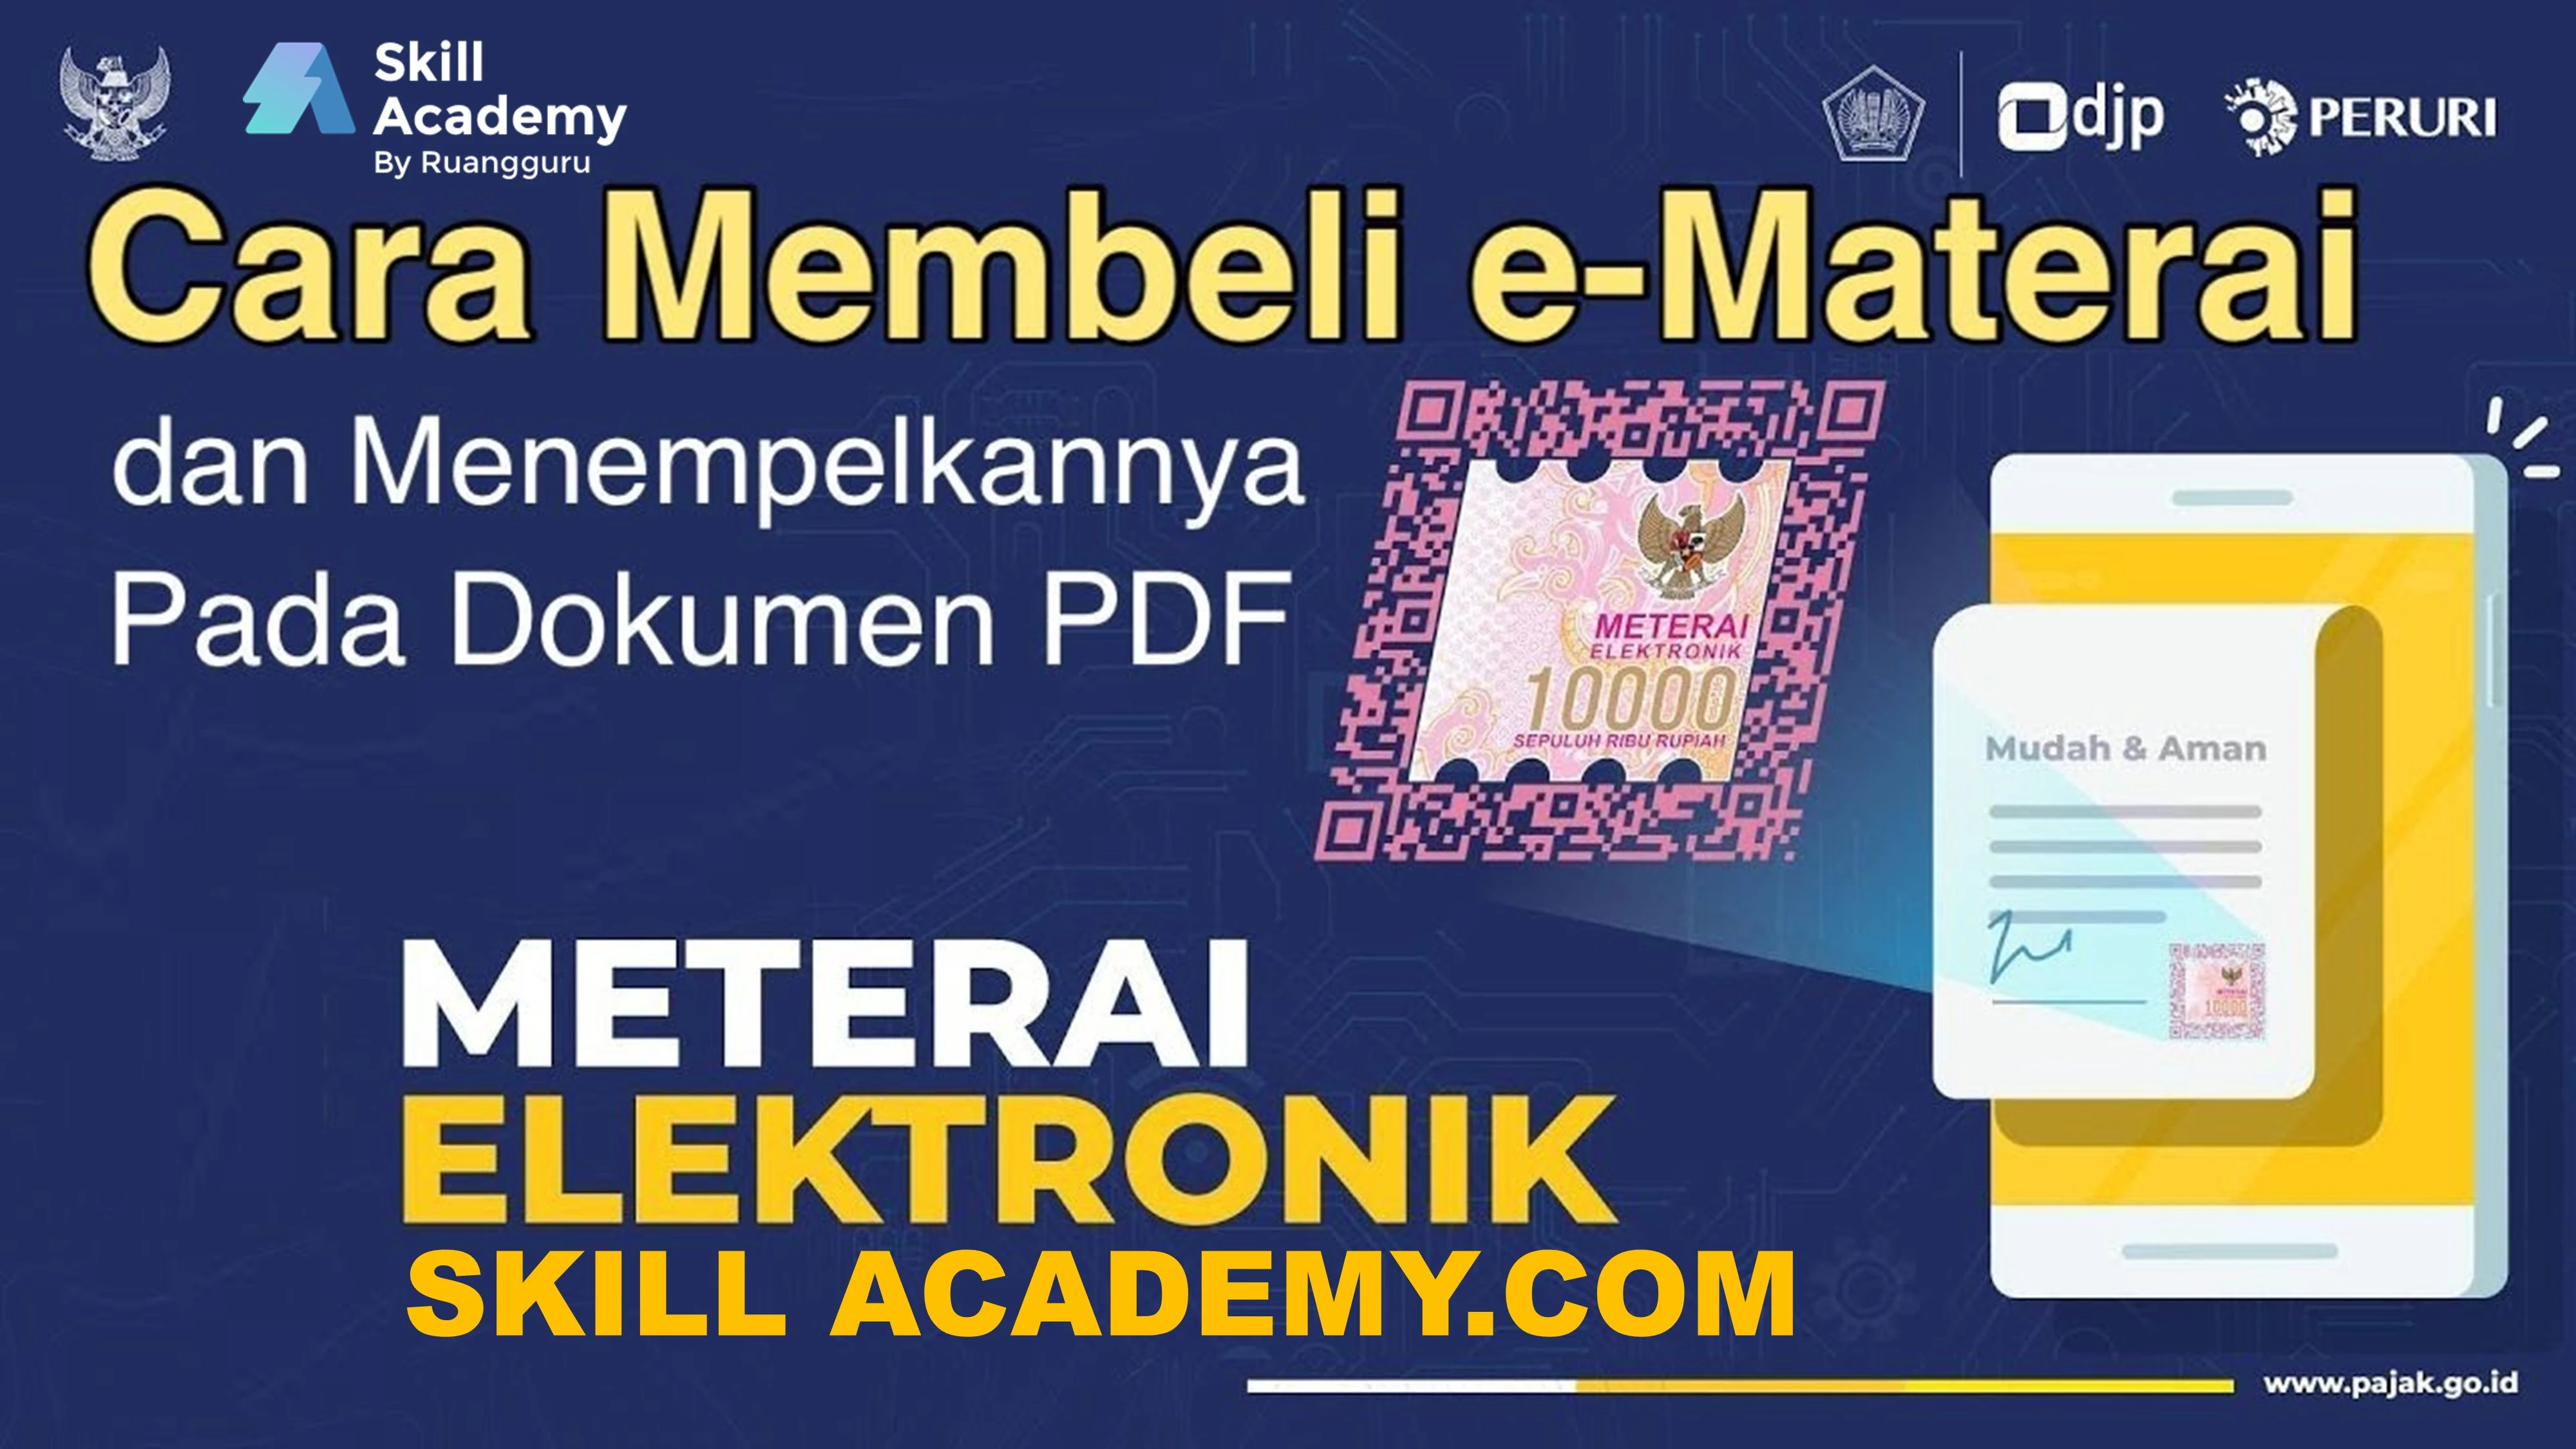 Beli e-Meterai Skill Academy